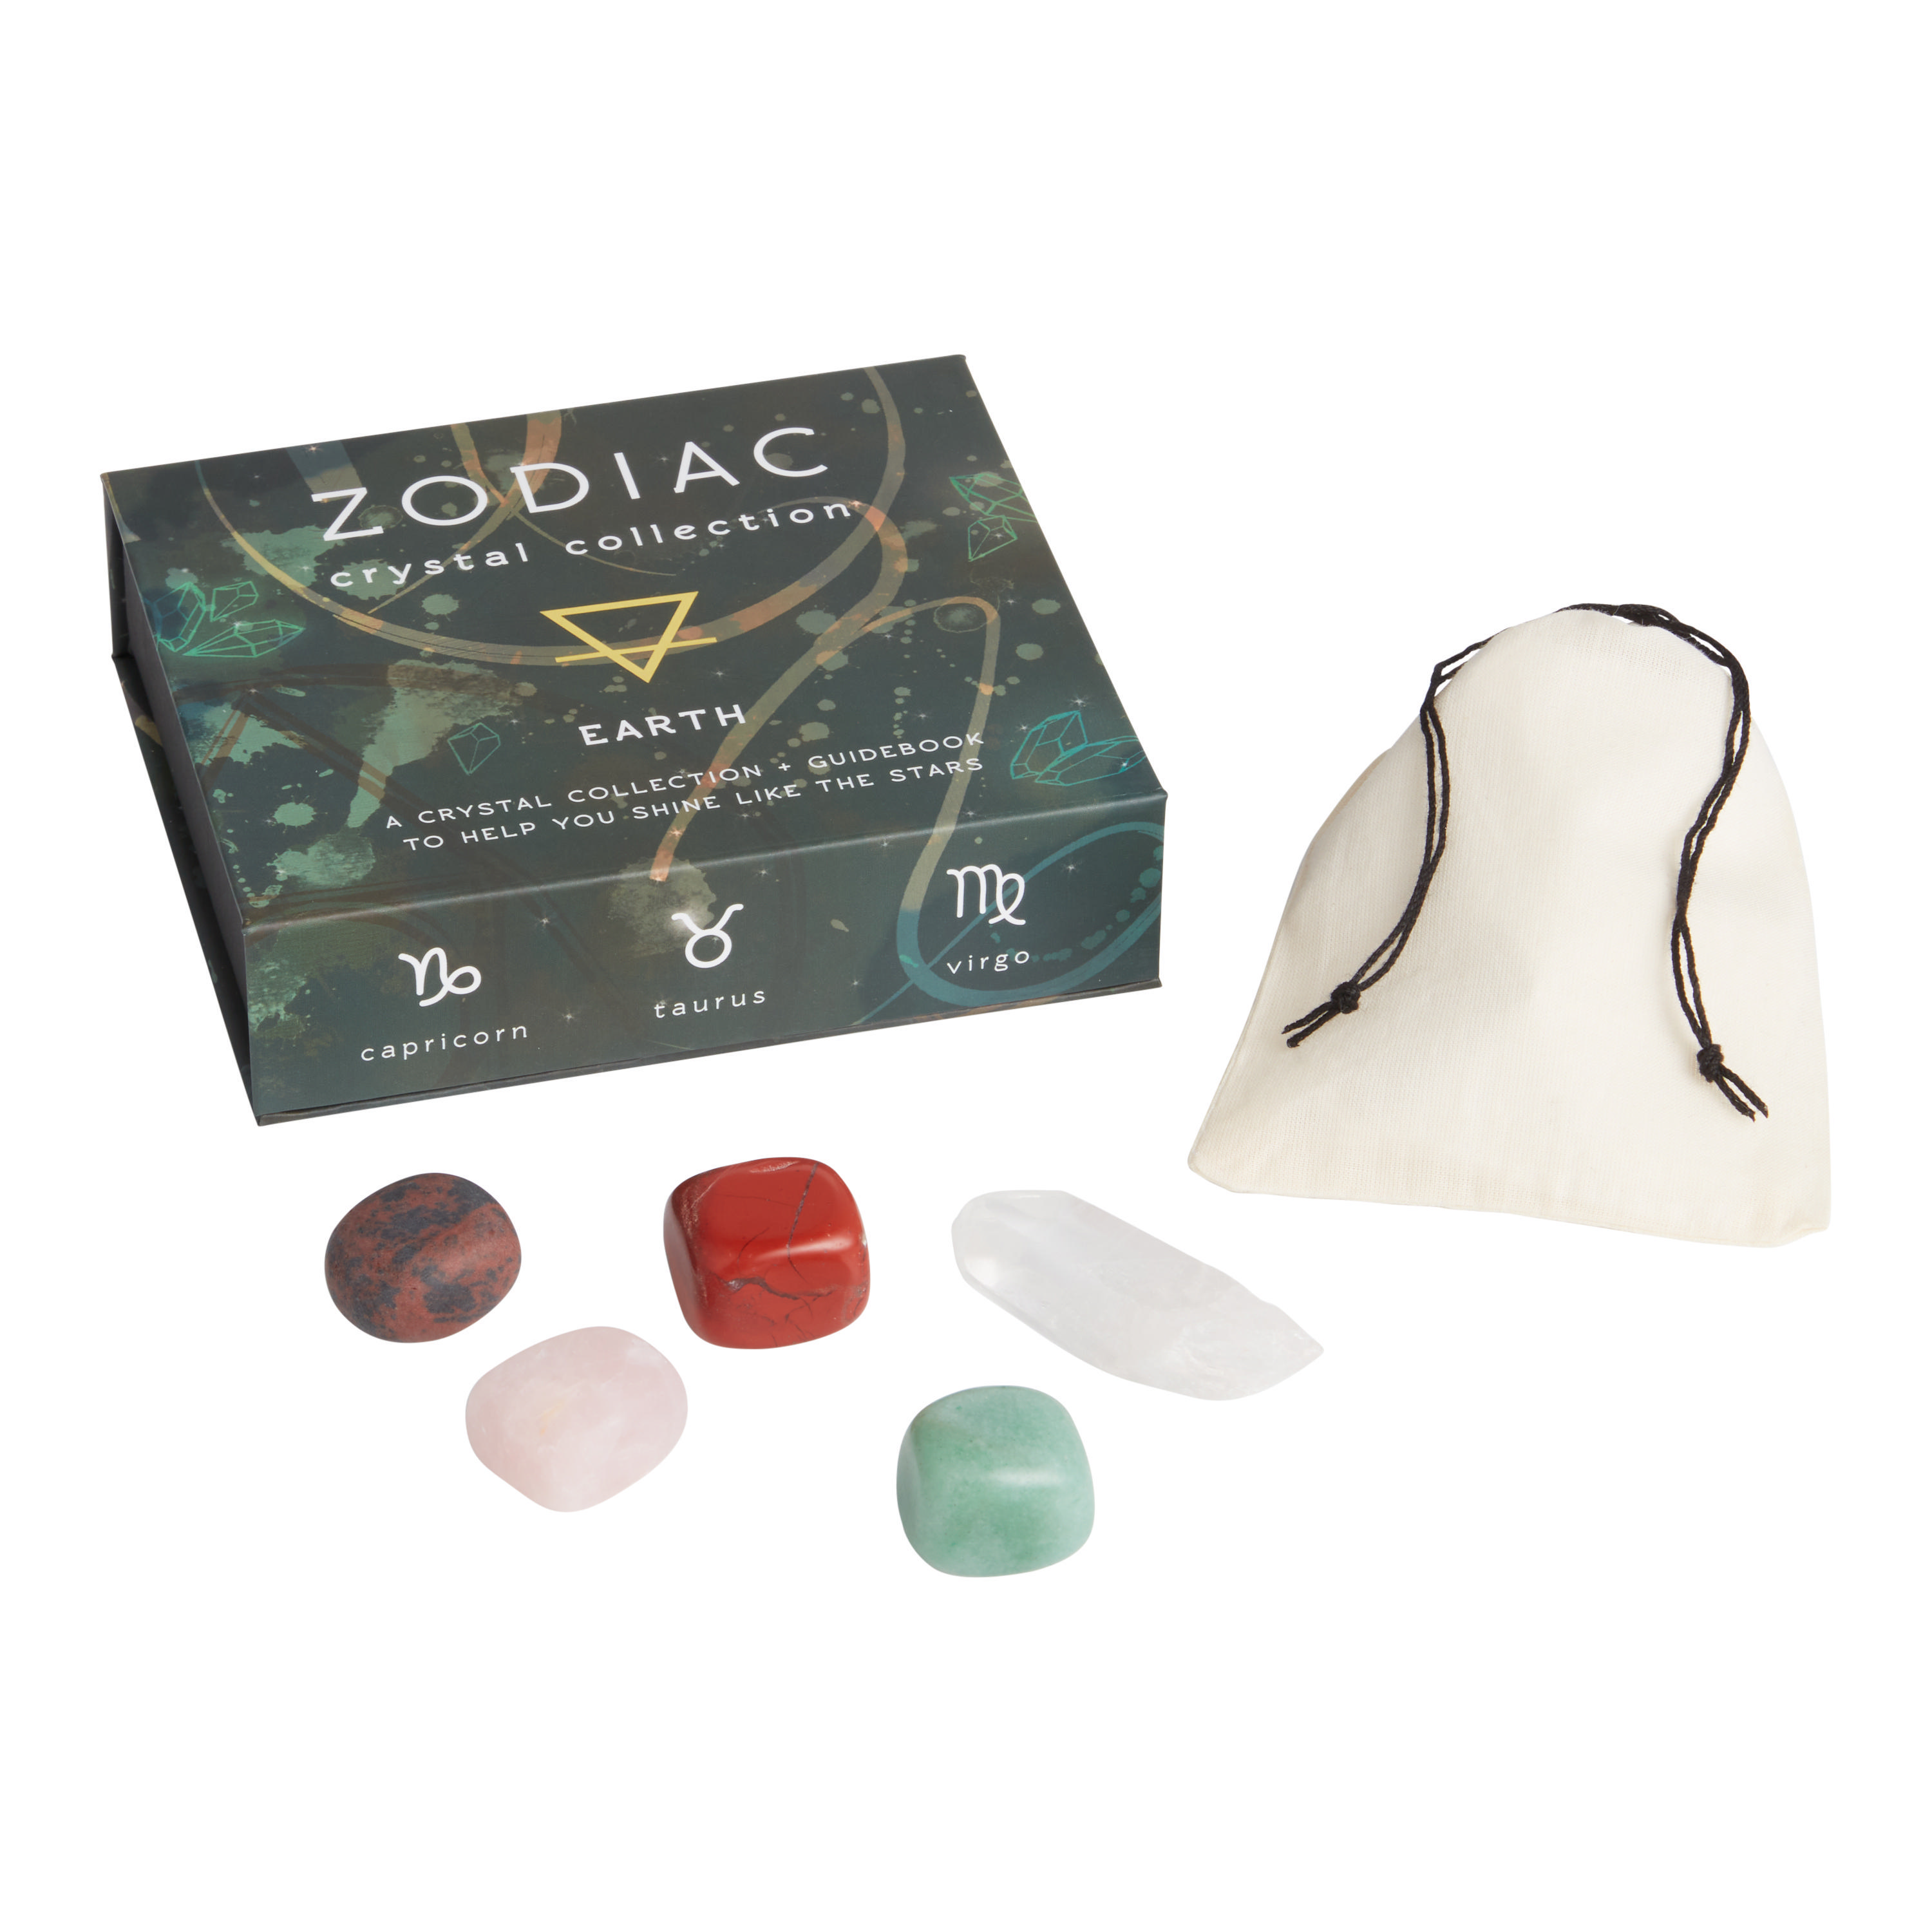 Earth Zodiac Elements Crystal Set - World Market